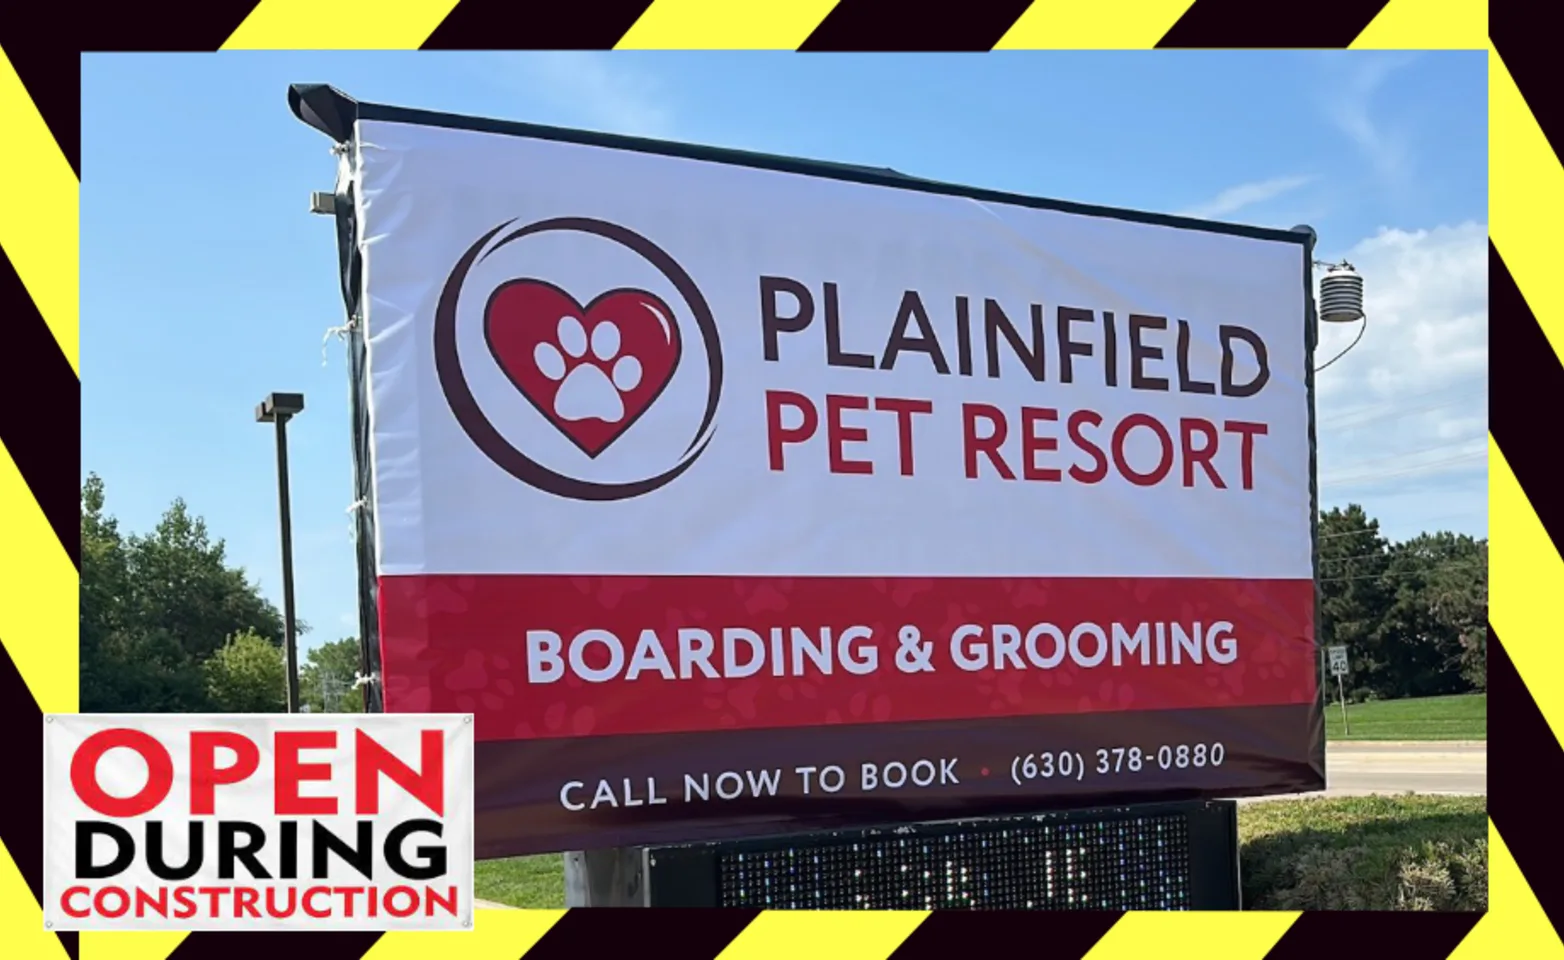 Plainfield Pet Resort open under construction